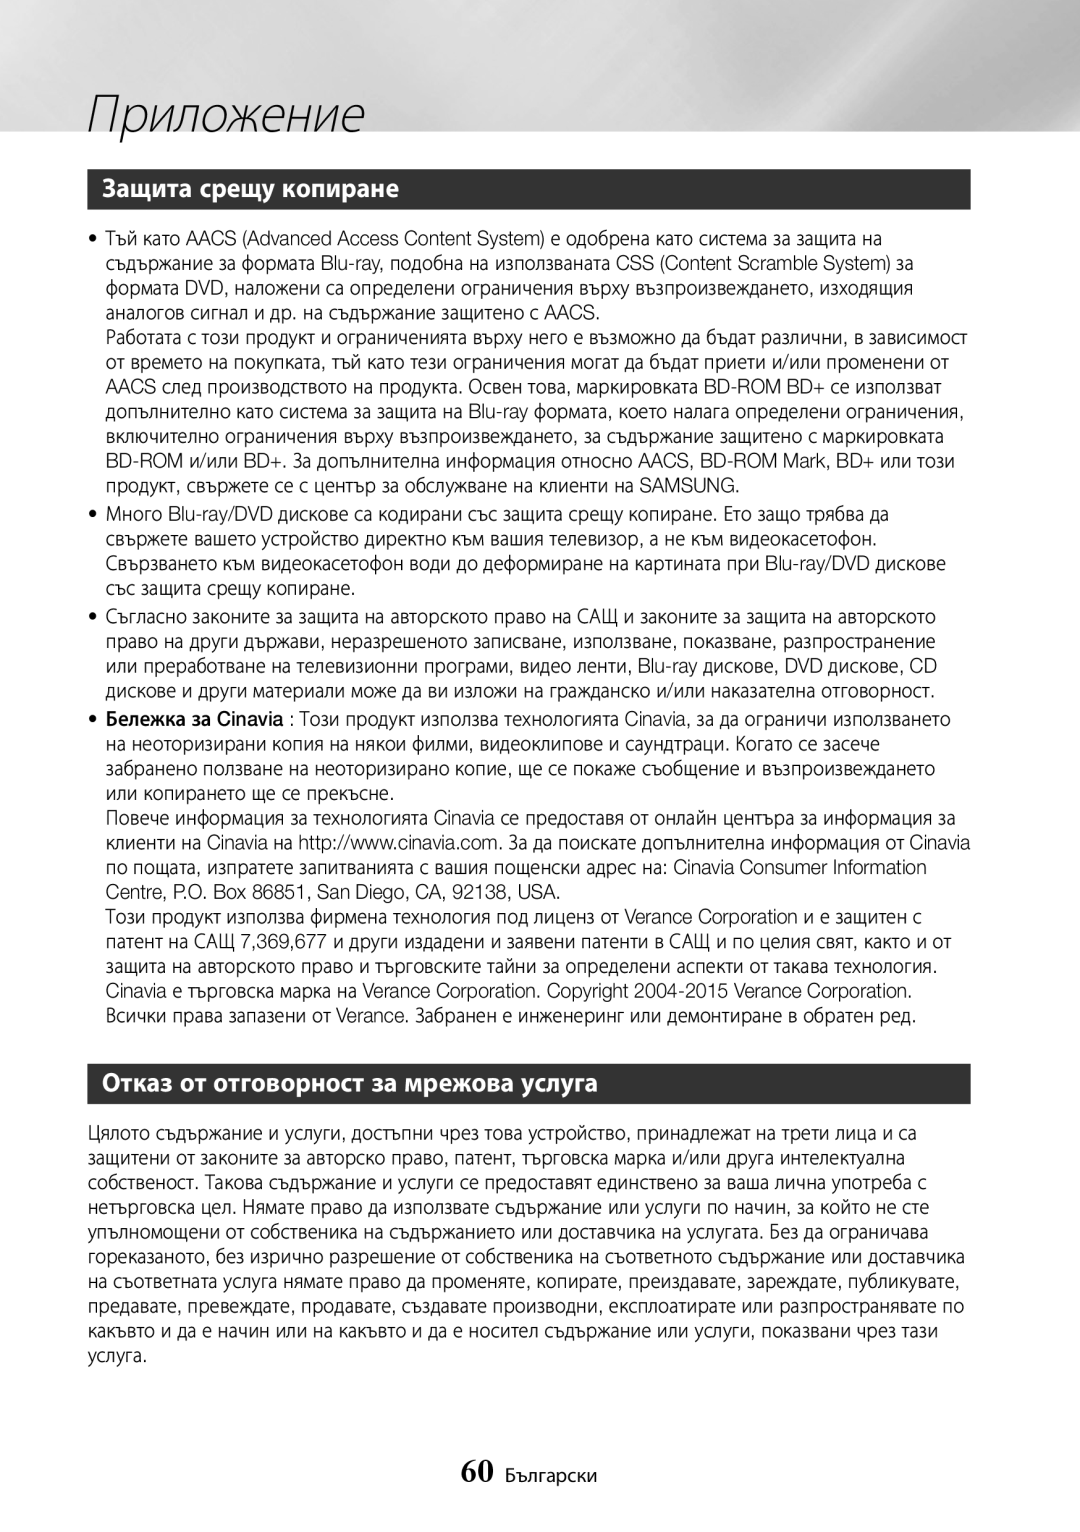 Samsung BD-J7500/EN manual Защита срещу копиране, Отказ от отговорност за мрежова услуга, Приложение, 60 Български 